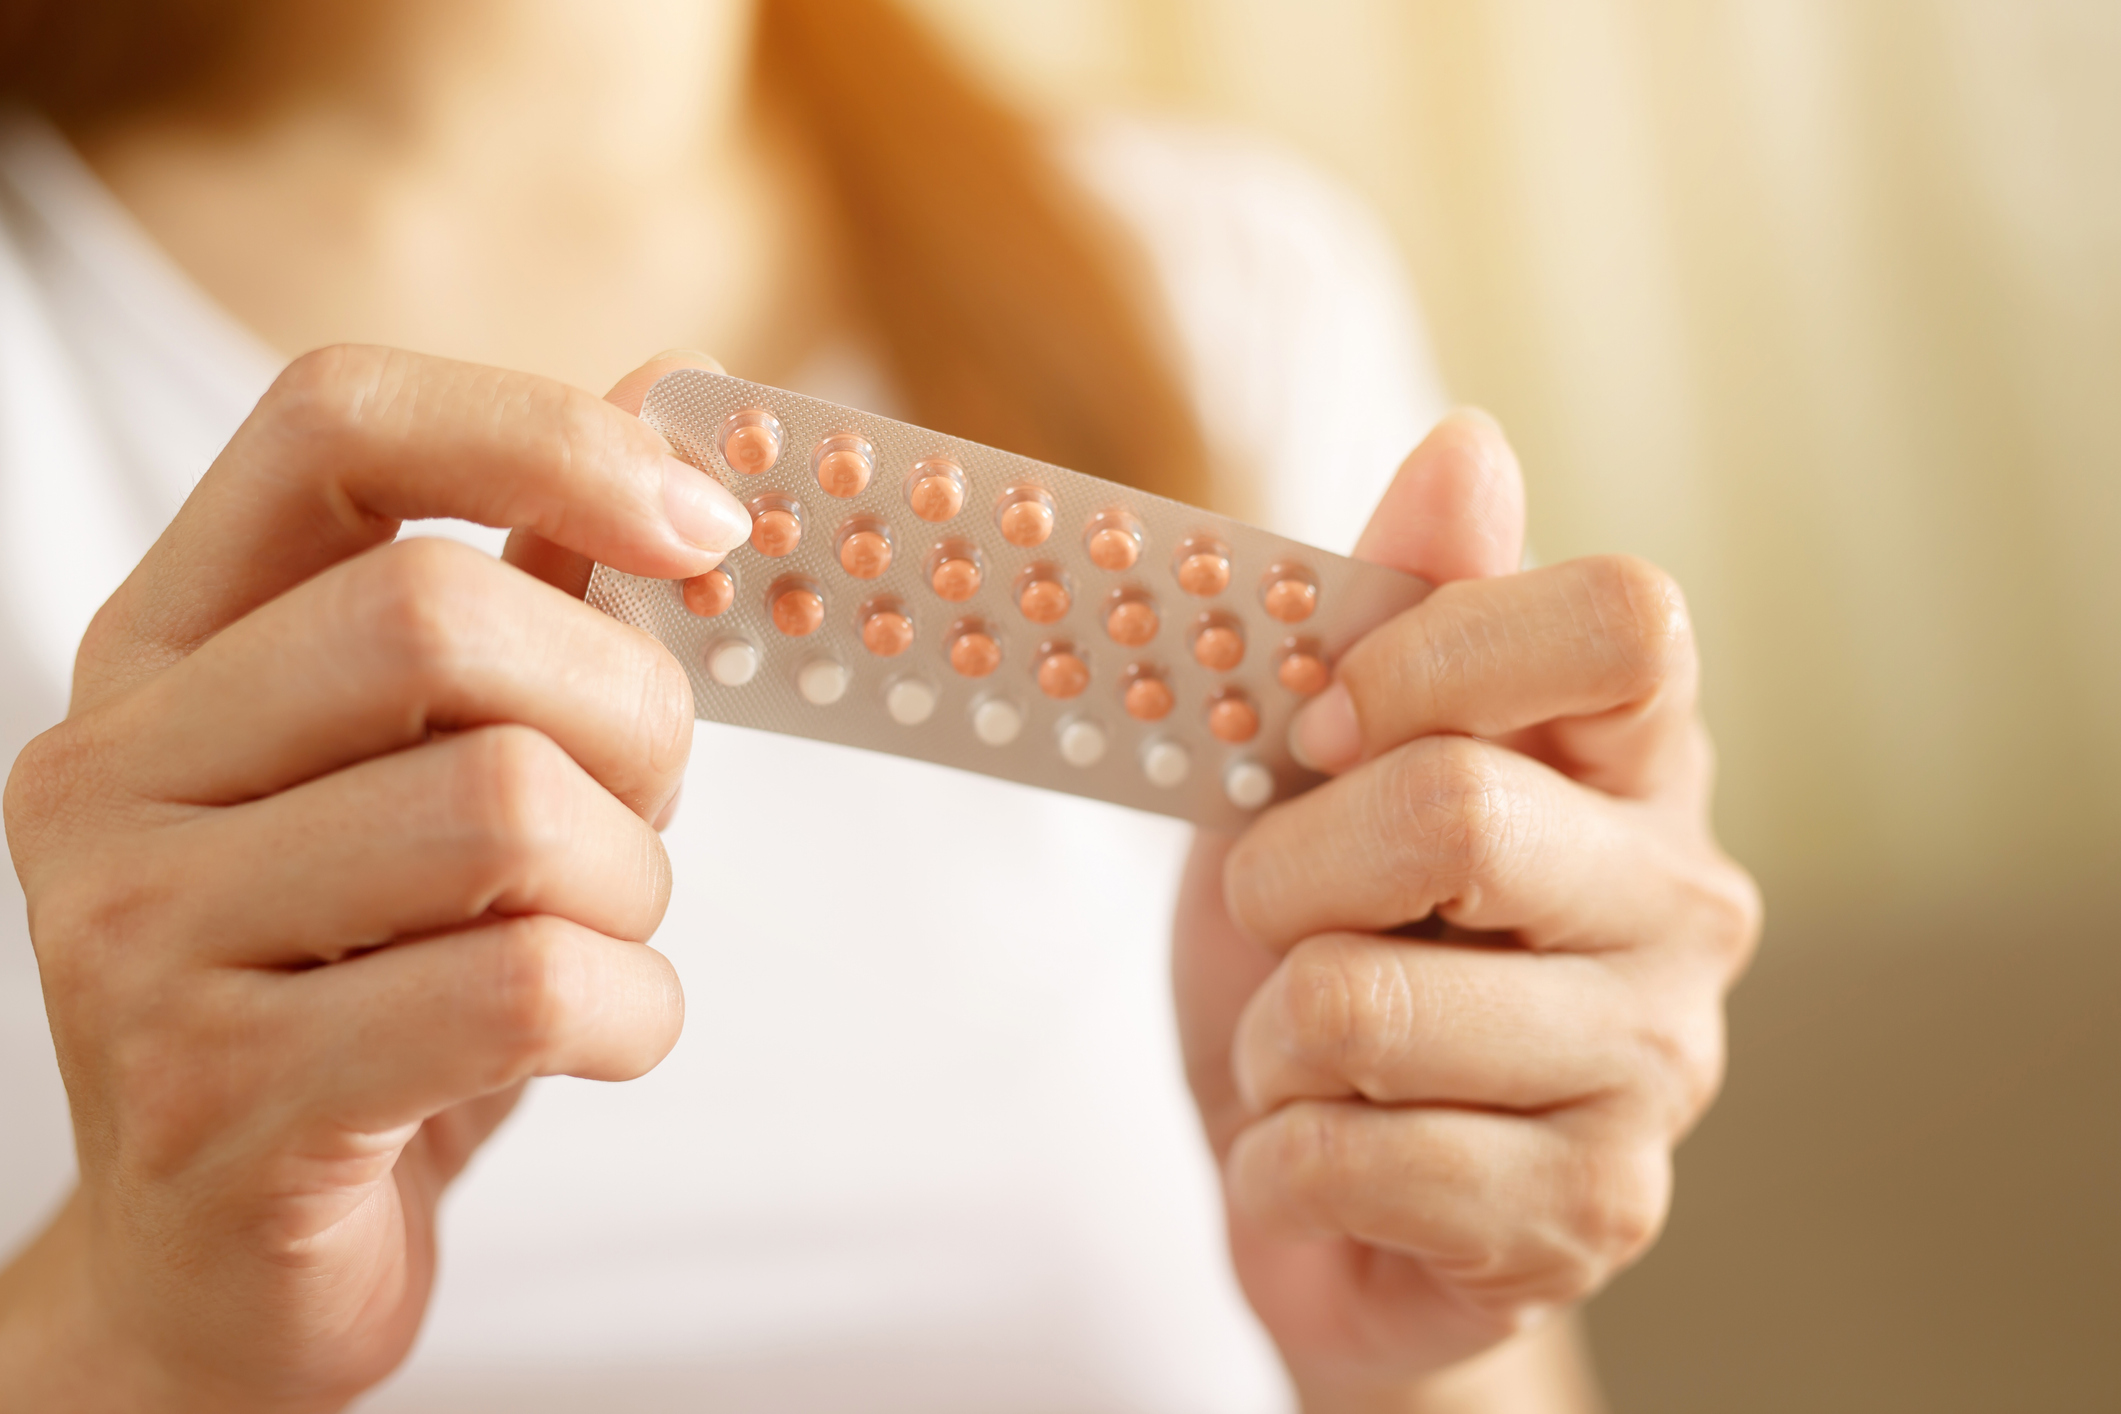 Conseils courants sur la pilule contraceptive liés au déclin de la santé mentale